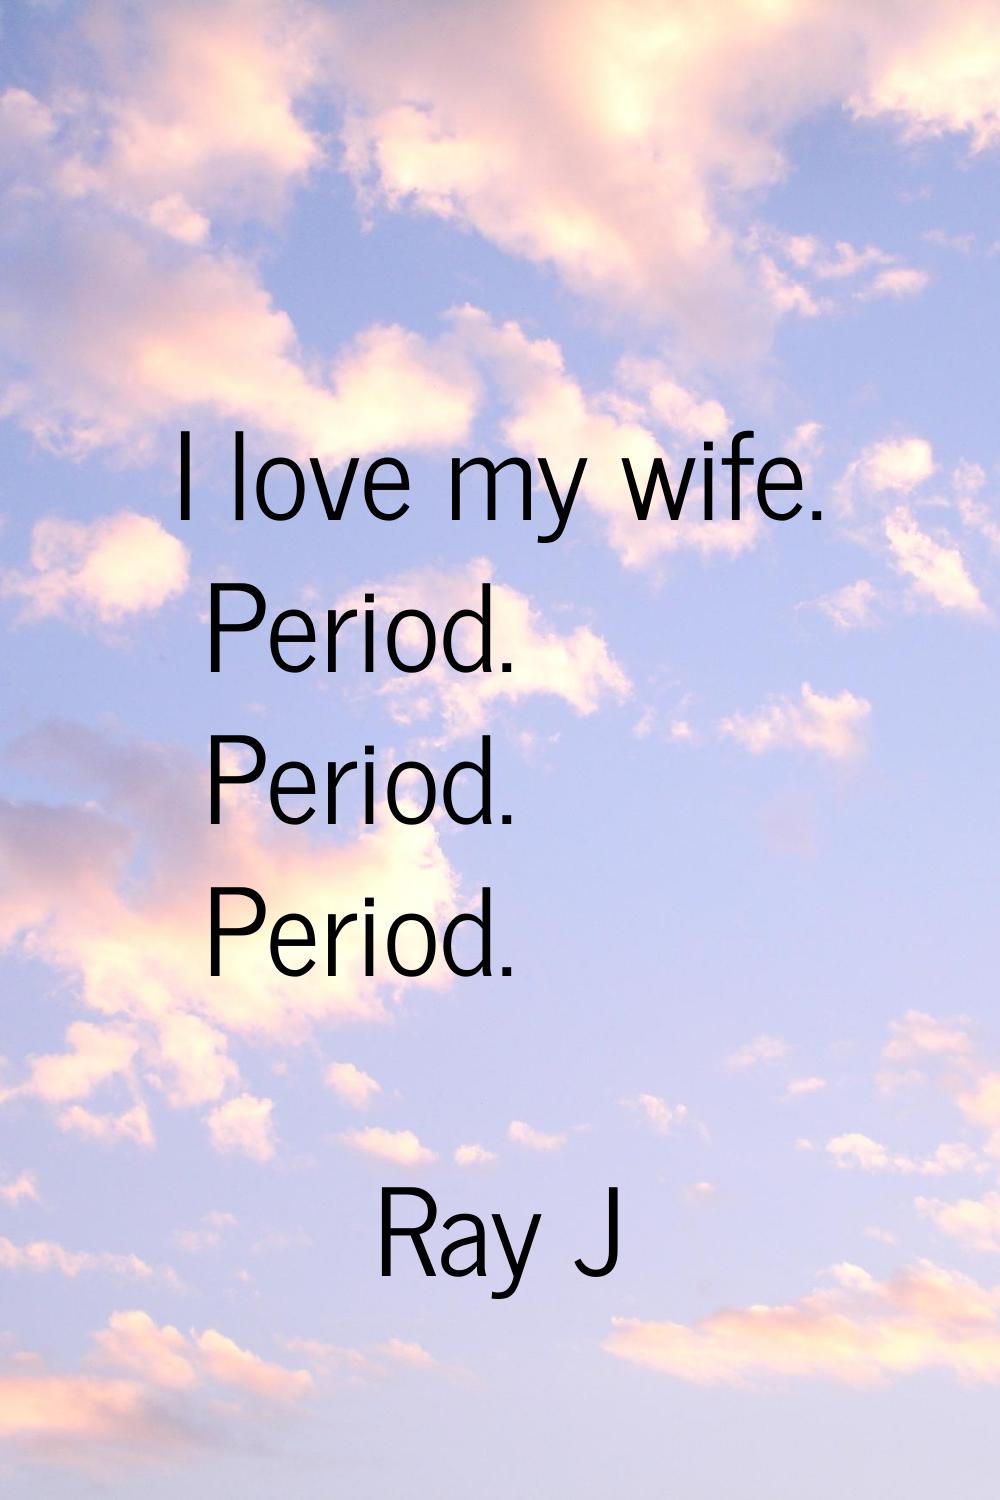 I love my wife. Period. Period. Period.